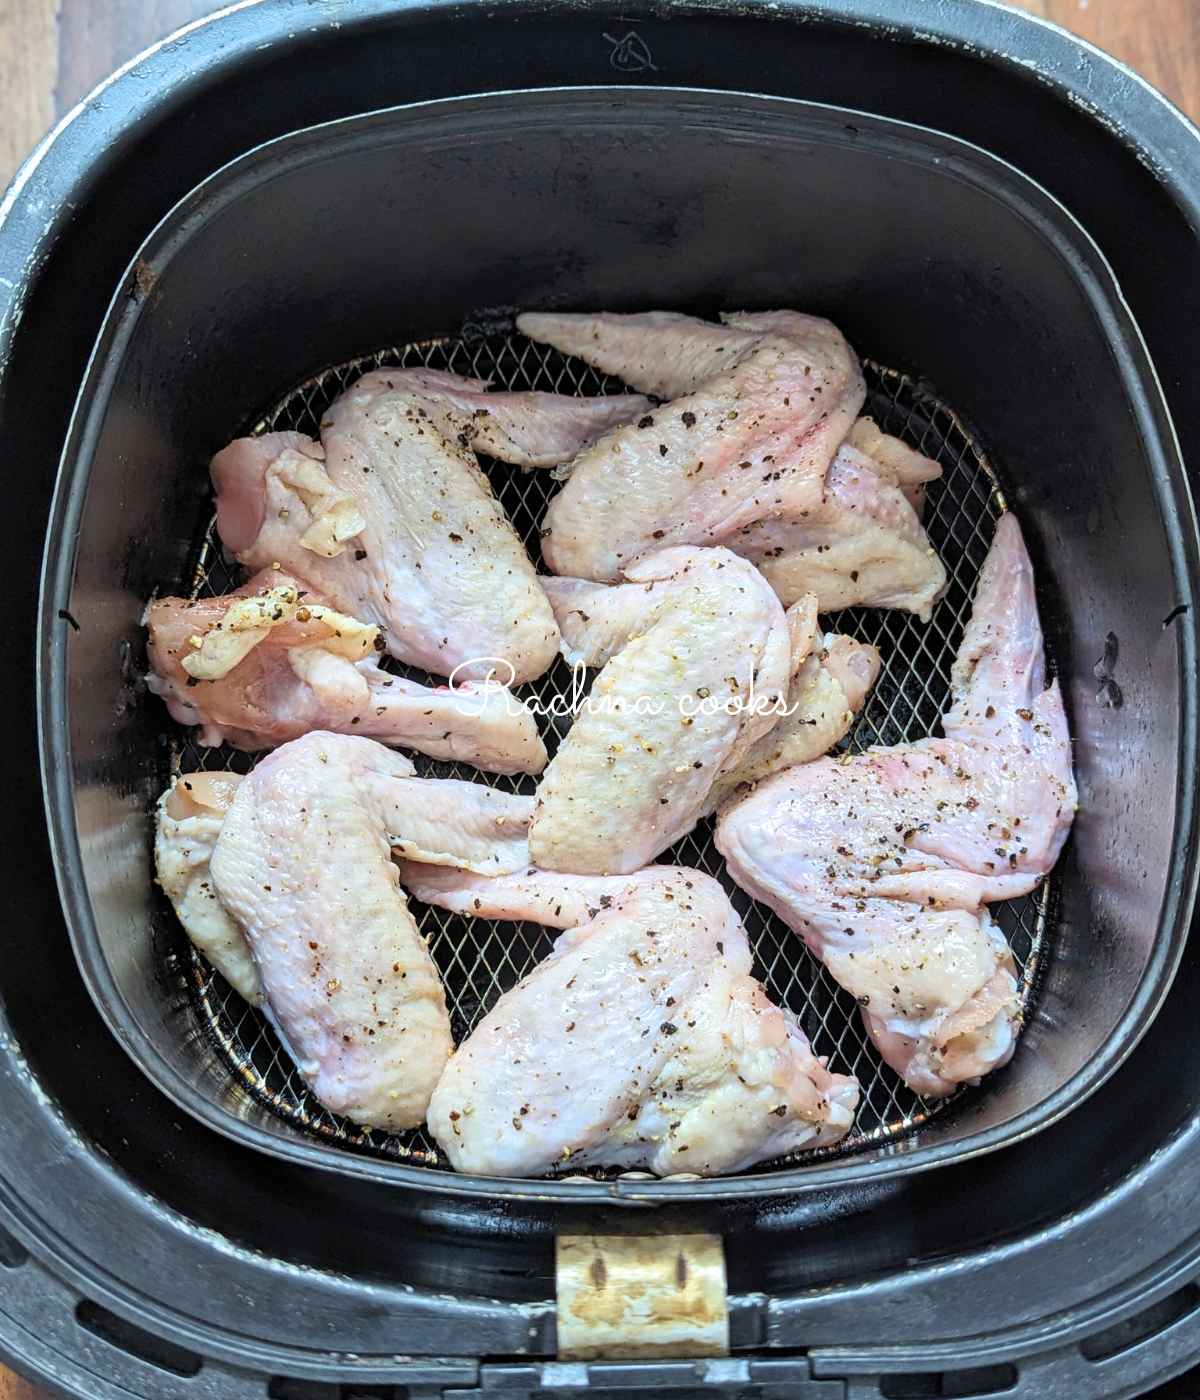 Seasoned chicken wings placed in iar fryer basket ready for air frying.